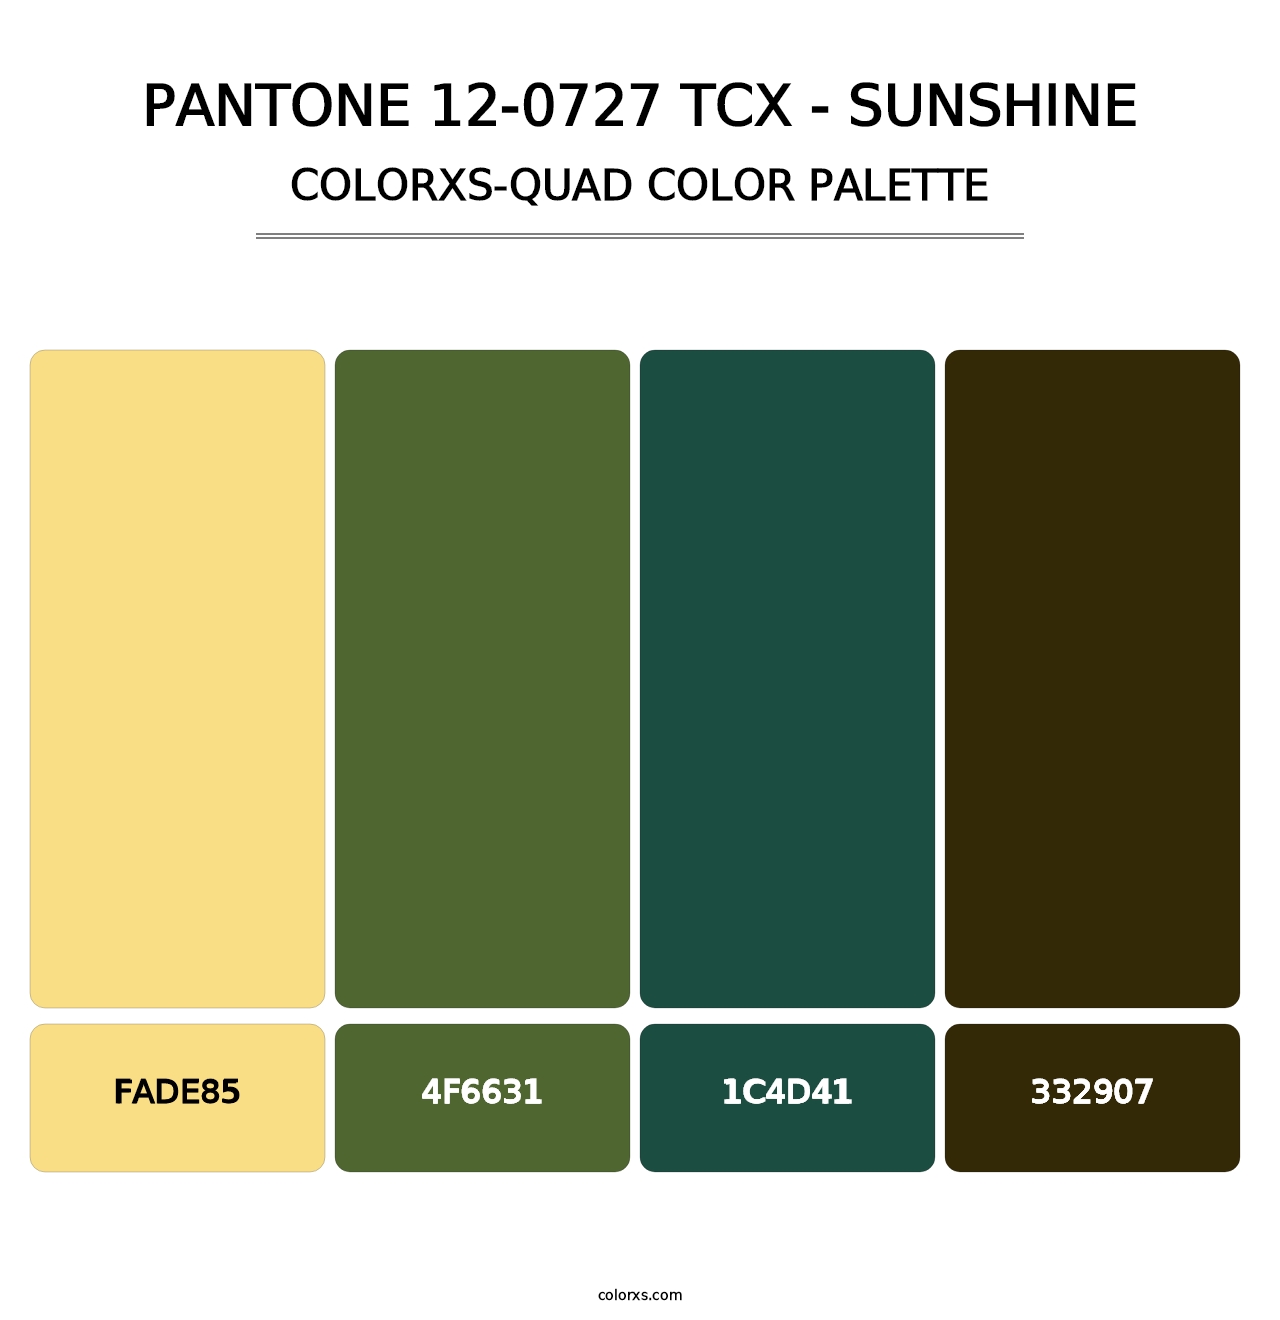 PANTONE 12-0727 TCX - Sunshine - Colorxs Quad Palette